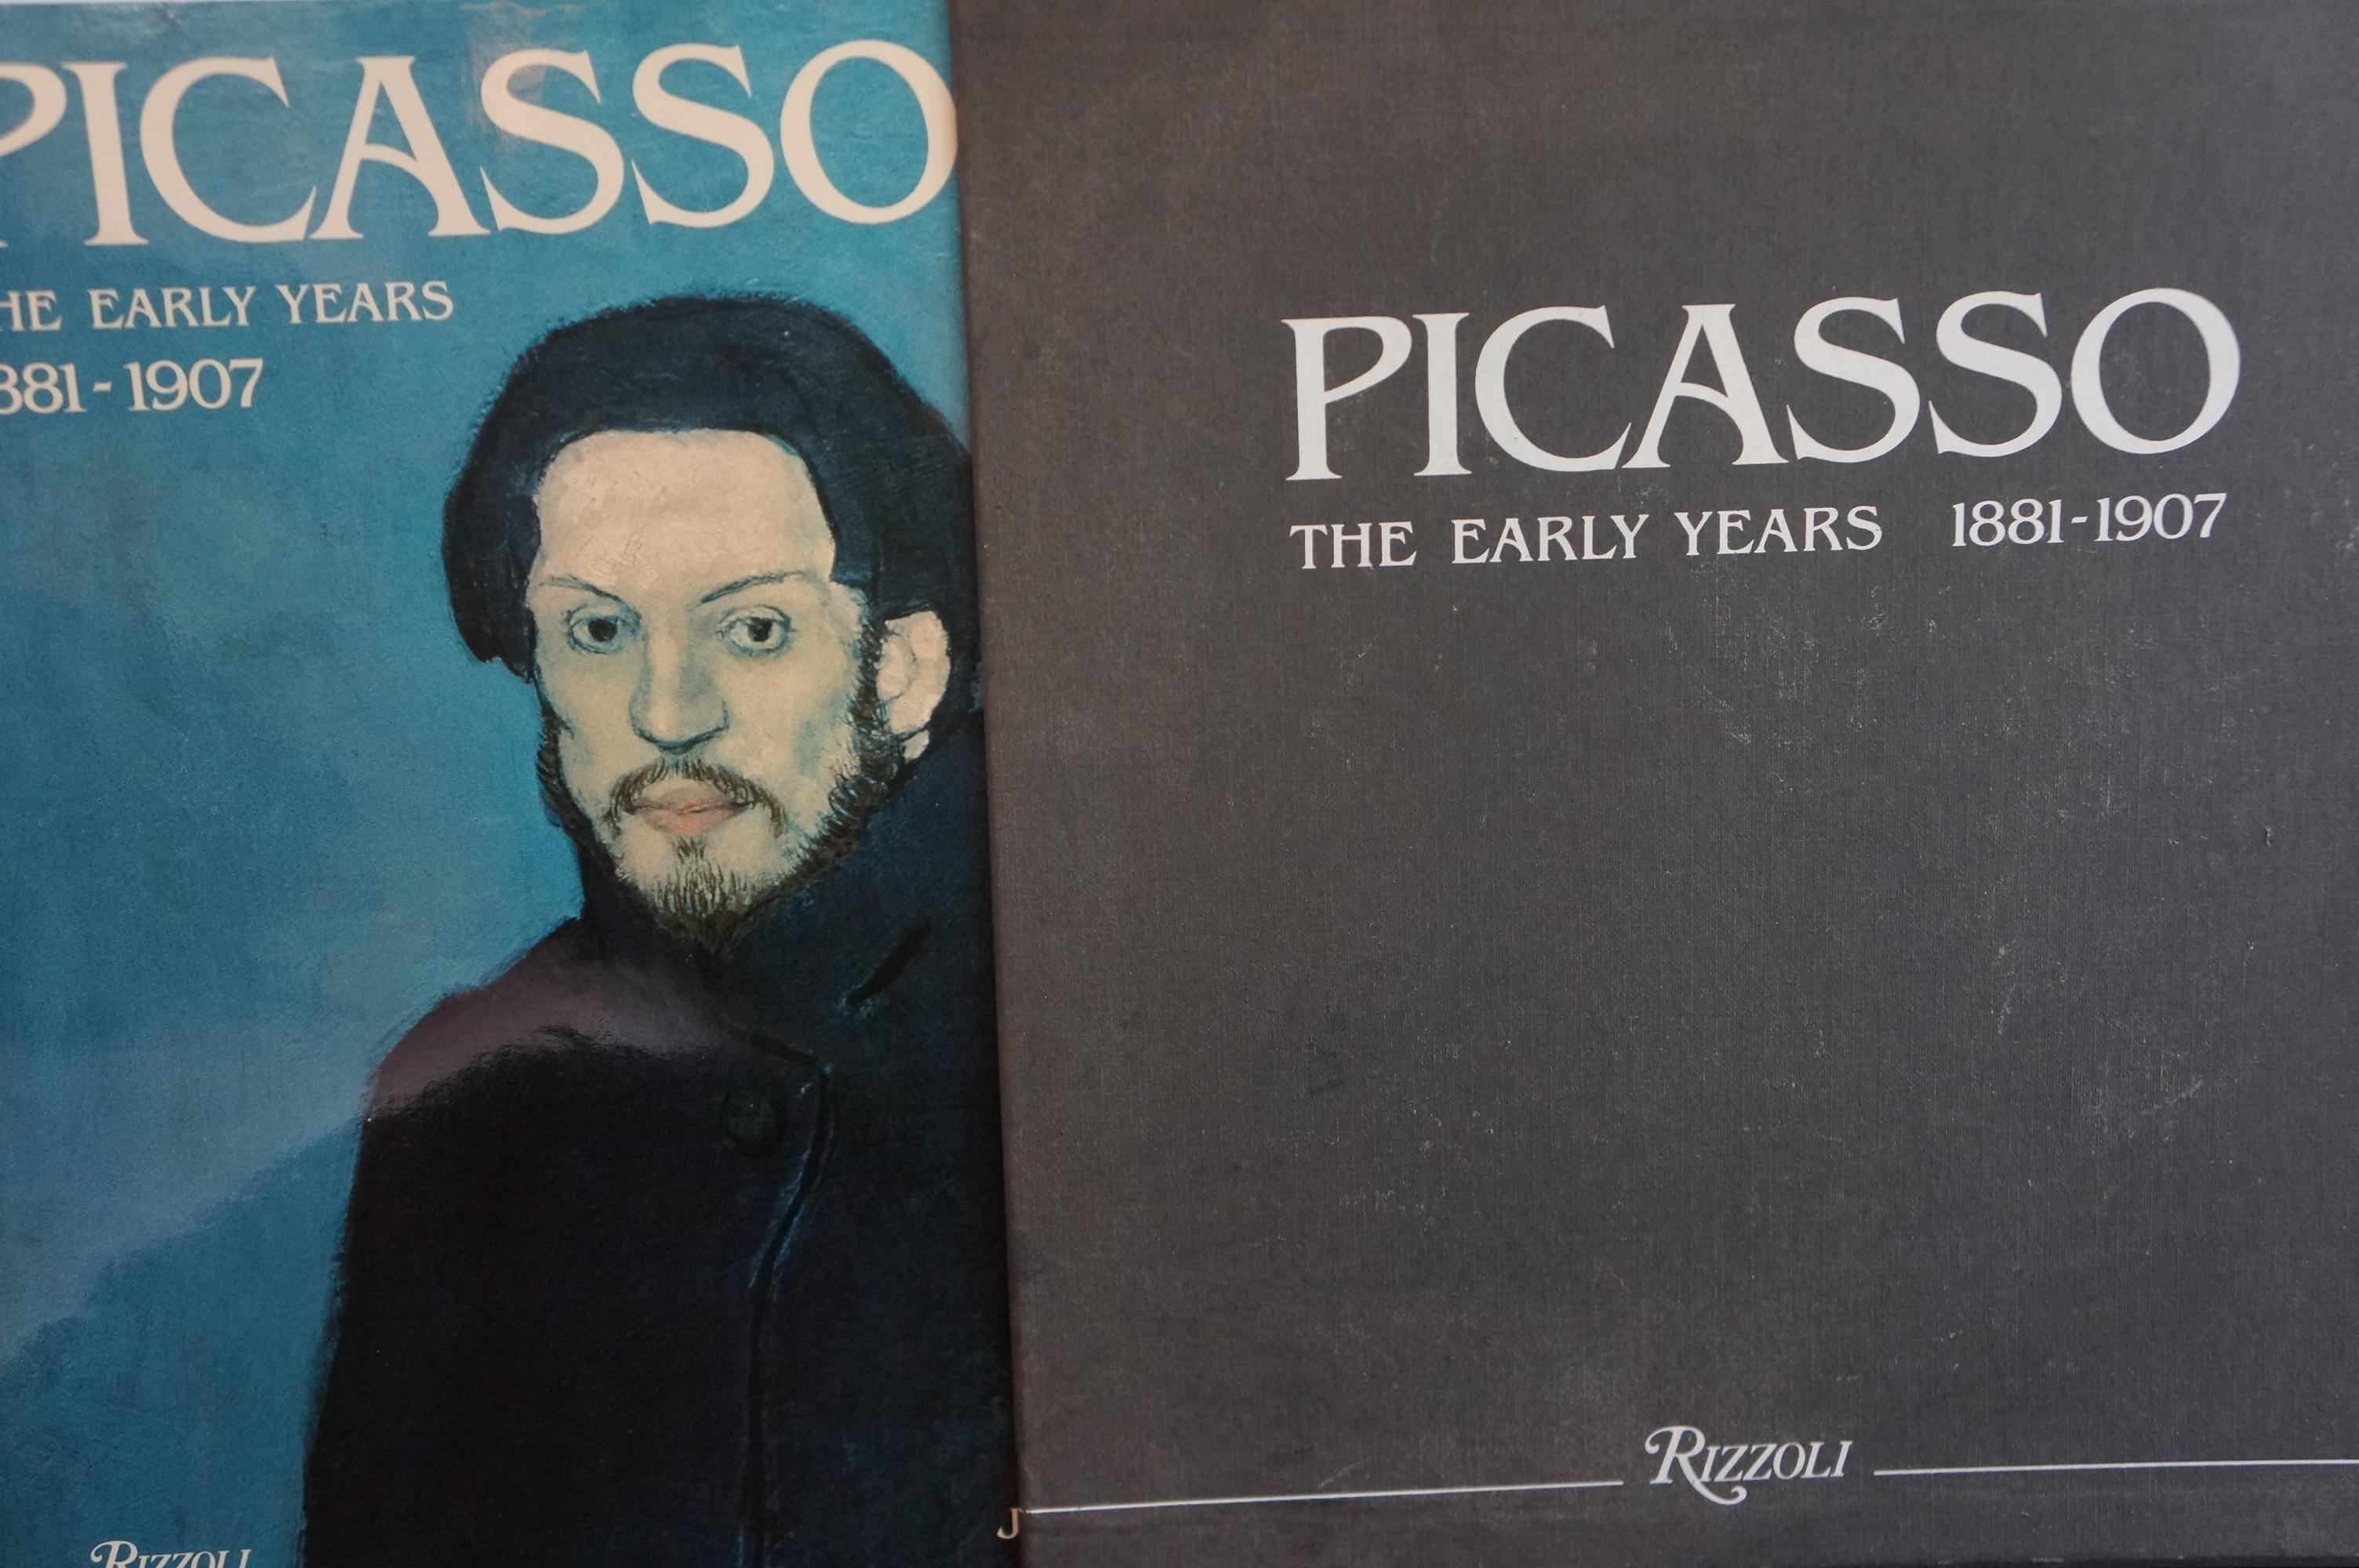 Pablo Picasso Livre du Palau I Fabre détaillant l'œuvre de Picasso de 1881 à 1907. Publié par Rizzoli, New York en 1981. Ce livre à couverture rigide est accompagné d'une pochette à couverture rigide. Le livre lui-même est en très bon état, la